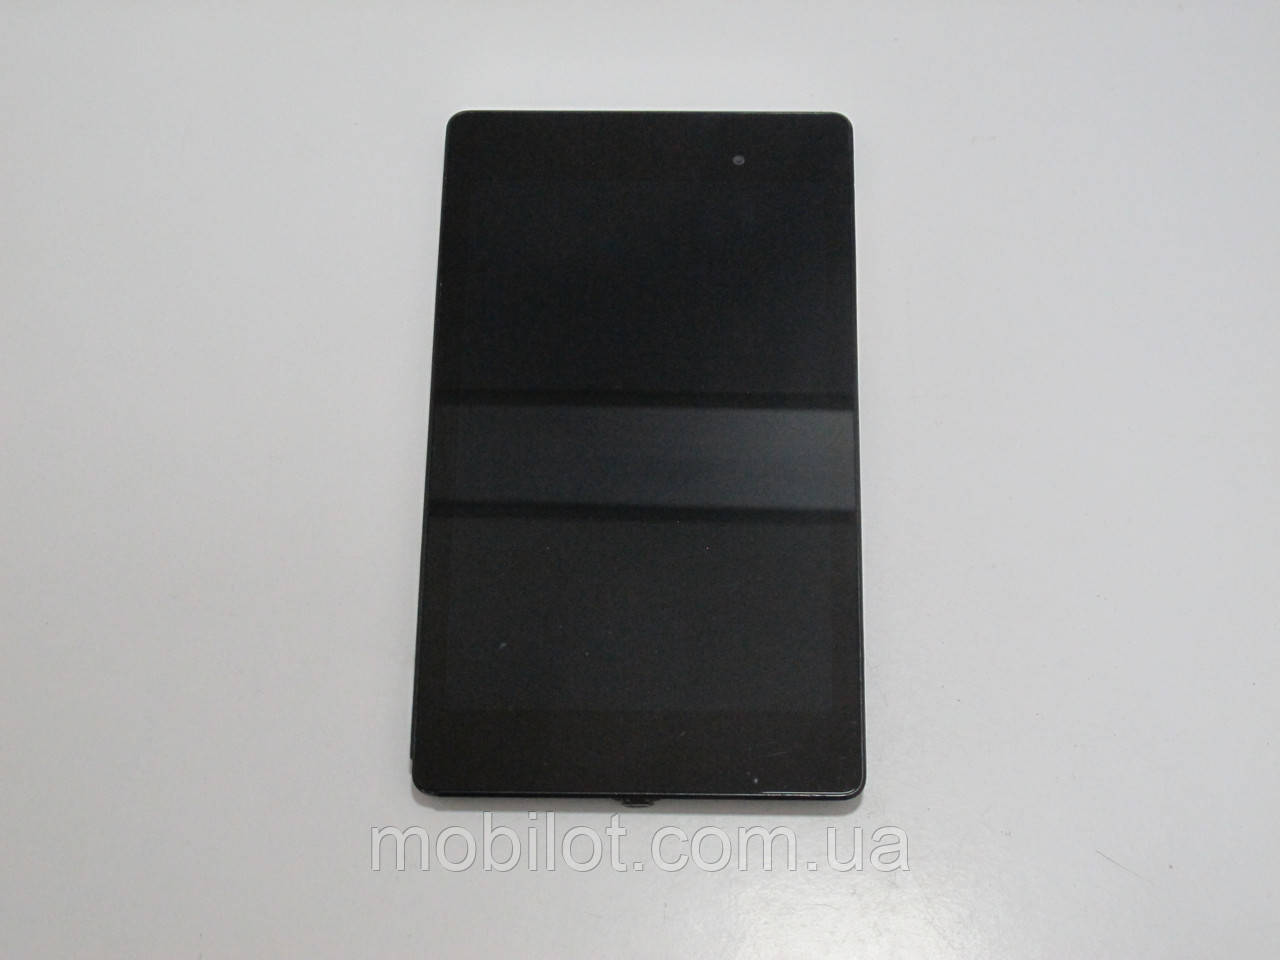 Планшет Asus Google Nexus 7 2013 (PZ-3913)Нет в наличии